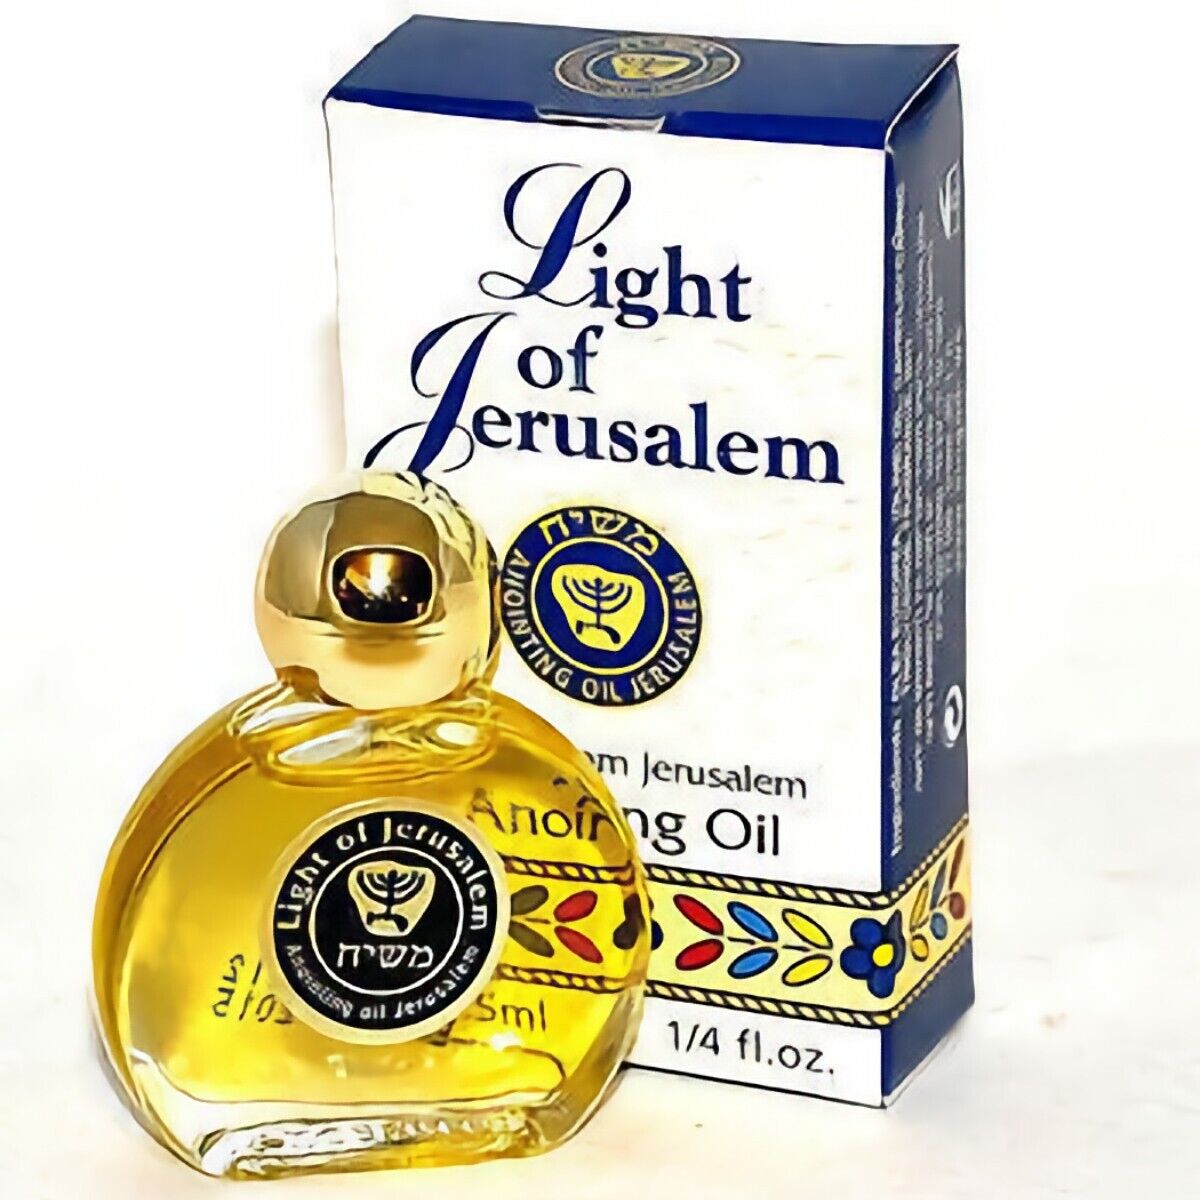 Holy Anointing Oil Light Of Jerusalem Bottle 7.5 ml/0.25 fl.oz. from Israel